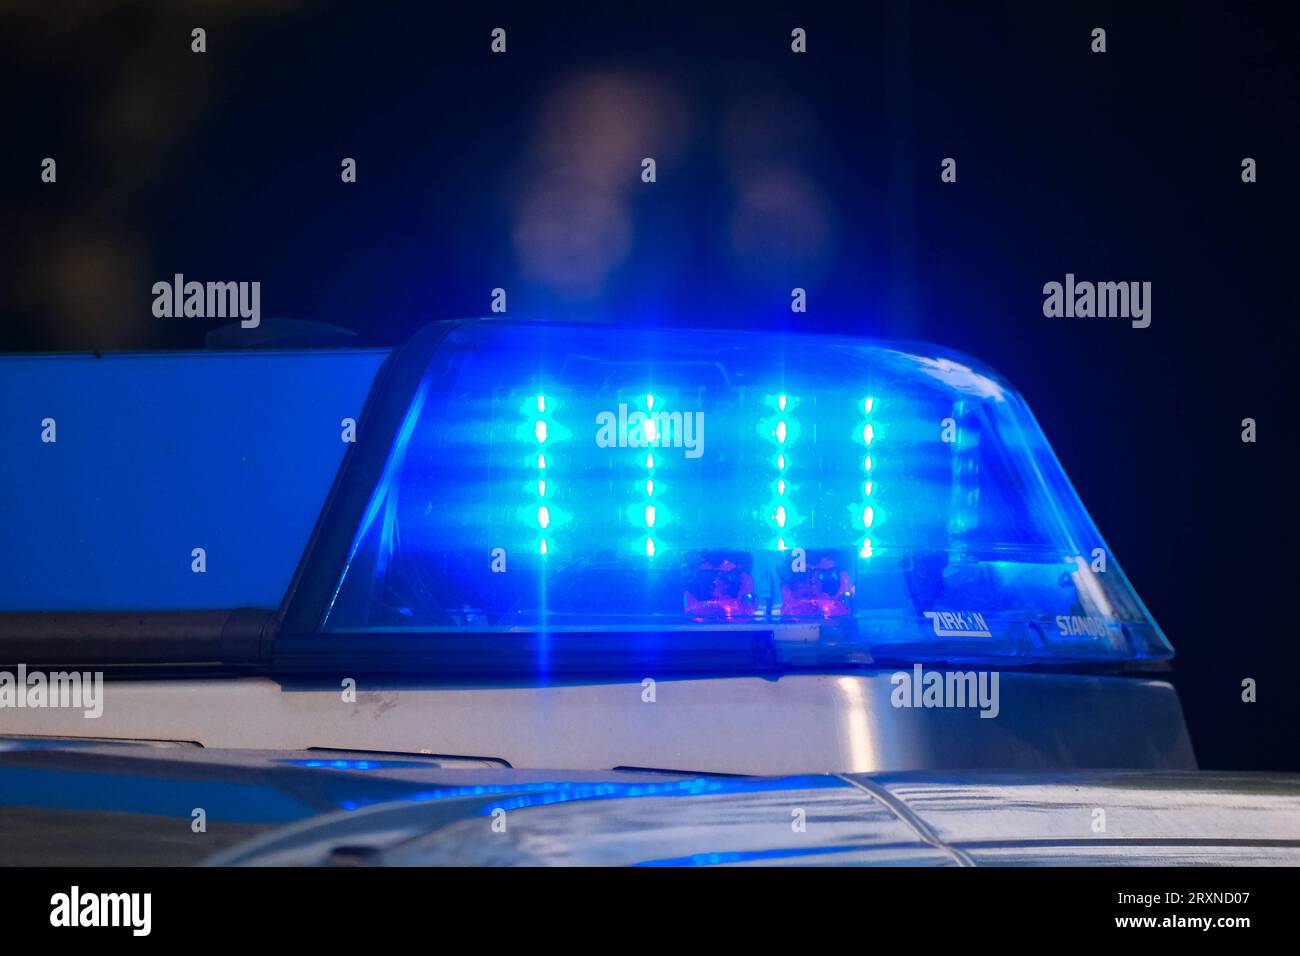 https://c8.alamy.com/comp/2RXND07/dsseldorf-26092023-polizei-auto-polizeiauto-polizeiautos-polizeiwagen-blaulicht-streifenwagen-rundumleuchte-sondersignal-sondersignale-rundumkennleuchte-kennleuchte-blaues-blinklicht-lichtsignal-einsatzfahrzeug-einsatzfahrzeug-rkl-drehlicht-wegerecht-dsseldorf-nordrhein-westfalen-deutschland-dusseldorf-26-09-2023-police-car-police-car-police-cars-blue-light-patrol-car-rotating-beacon-special-signal-special-signals-rotating-beacon-beacon-blue-flashing-light-light-signal-emergency-vehicle-emergency-vehicle-rkl-rotating-light-right-of-way-dusseldorf-north-rhine-westphalia-germany-2RXND07.jpg